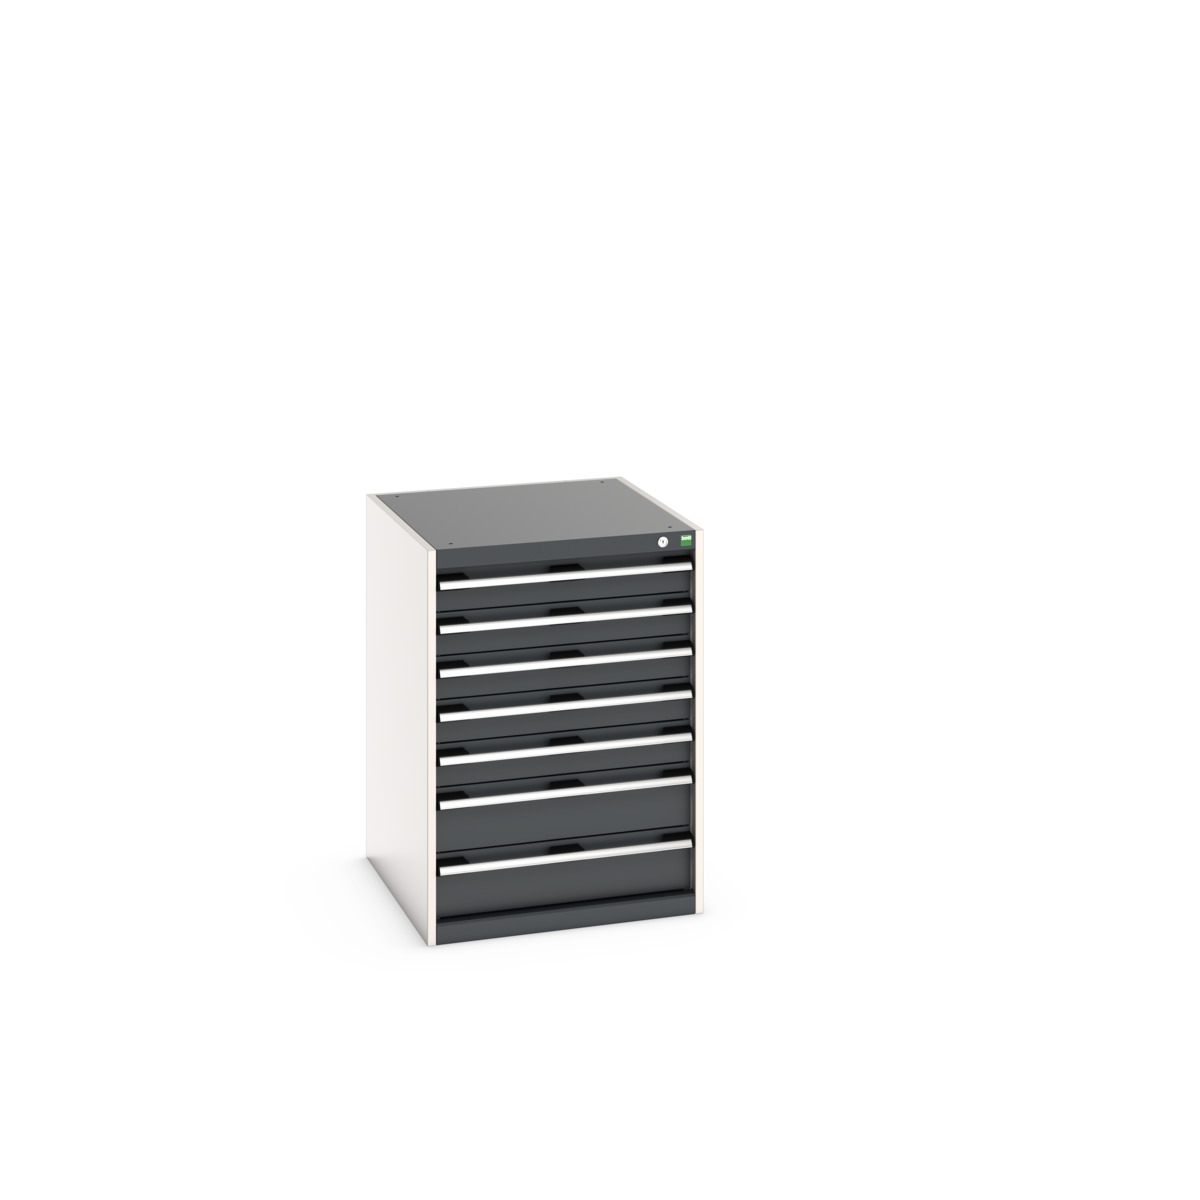 40027090.19V - cubio drawer cabinet